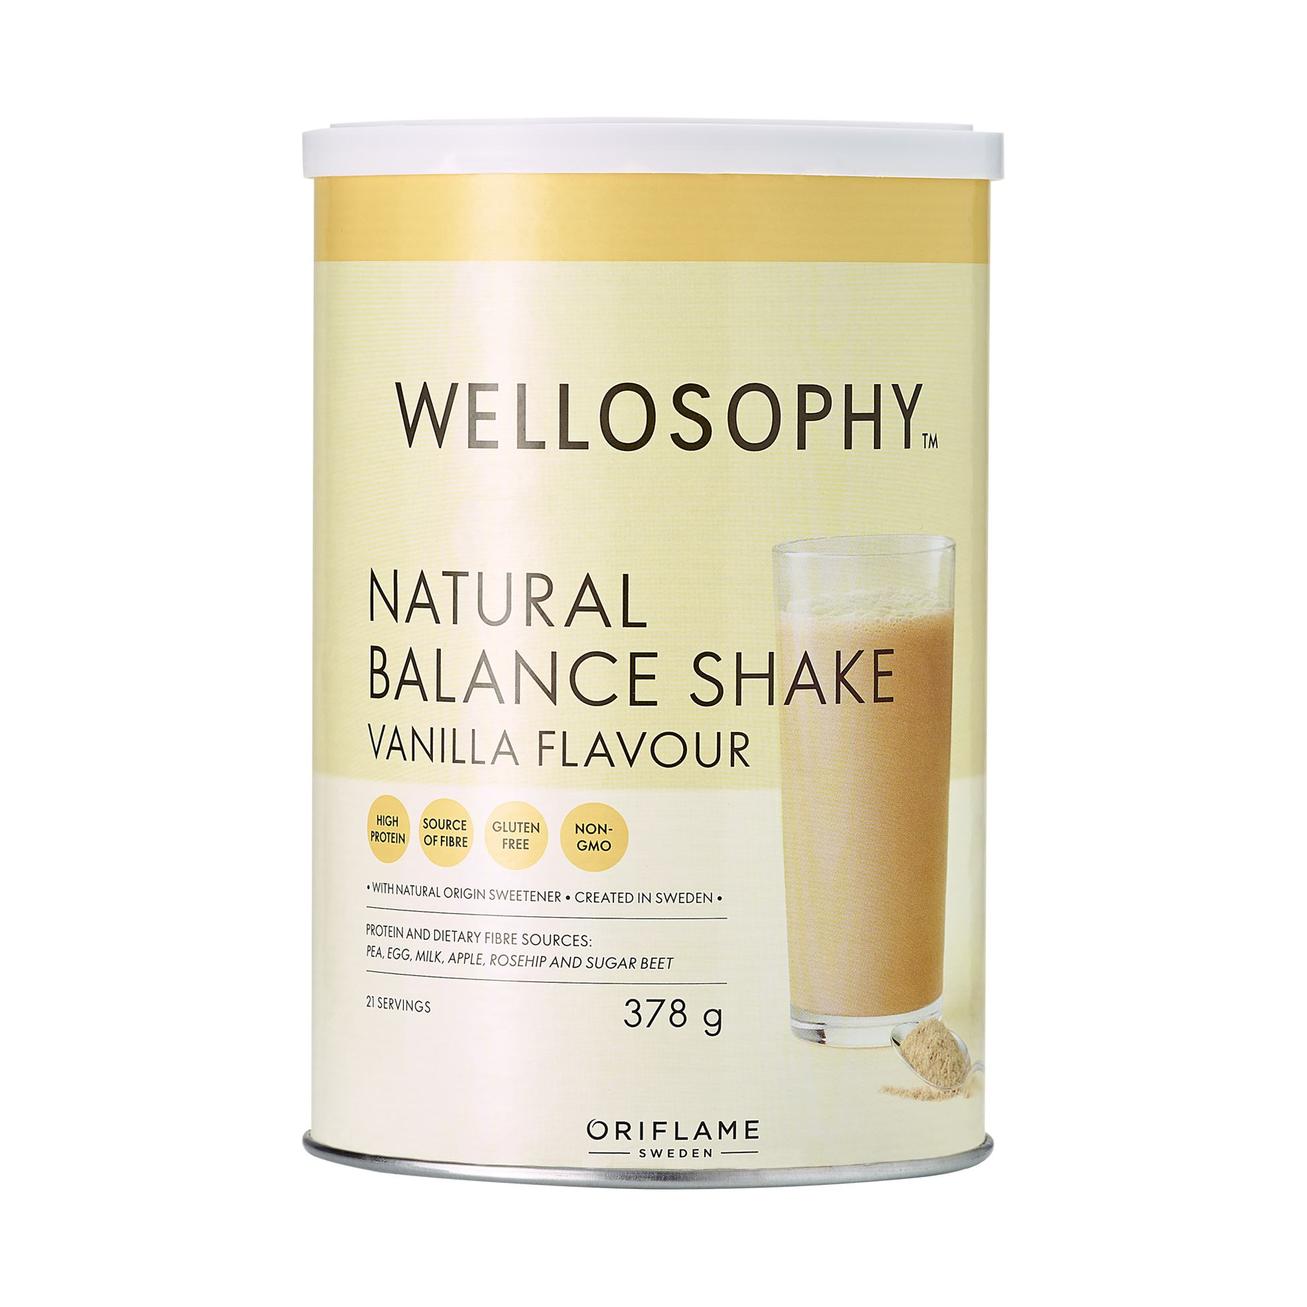 Aanbieding van Natural Balance Shake Vanilla Flavour voor 54€ bij Oriflame